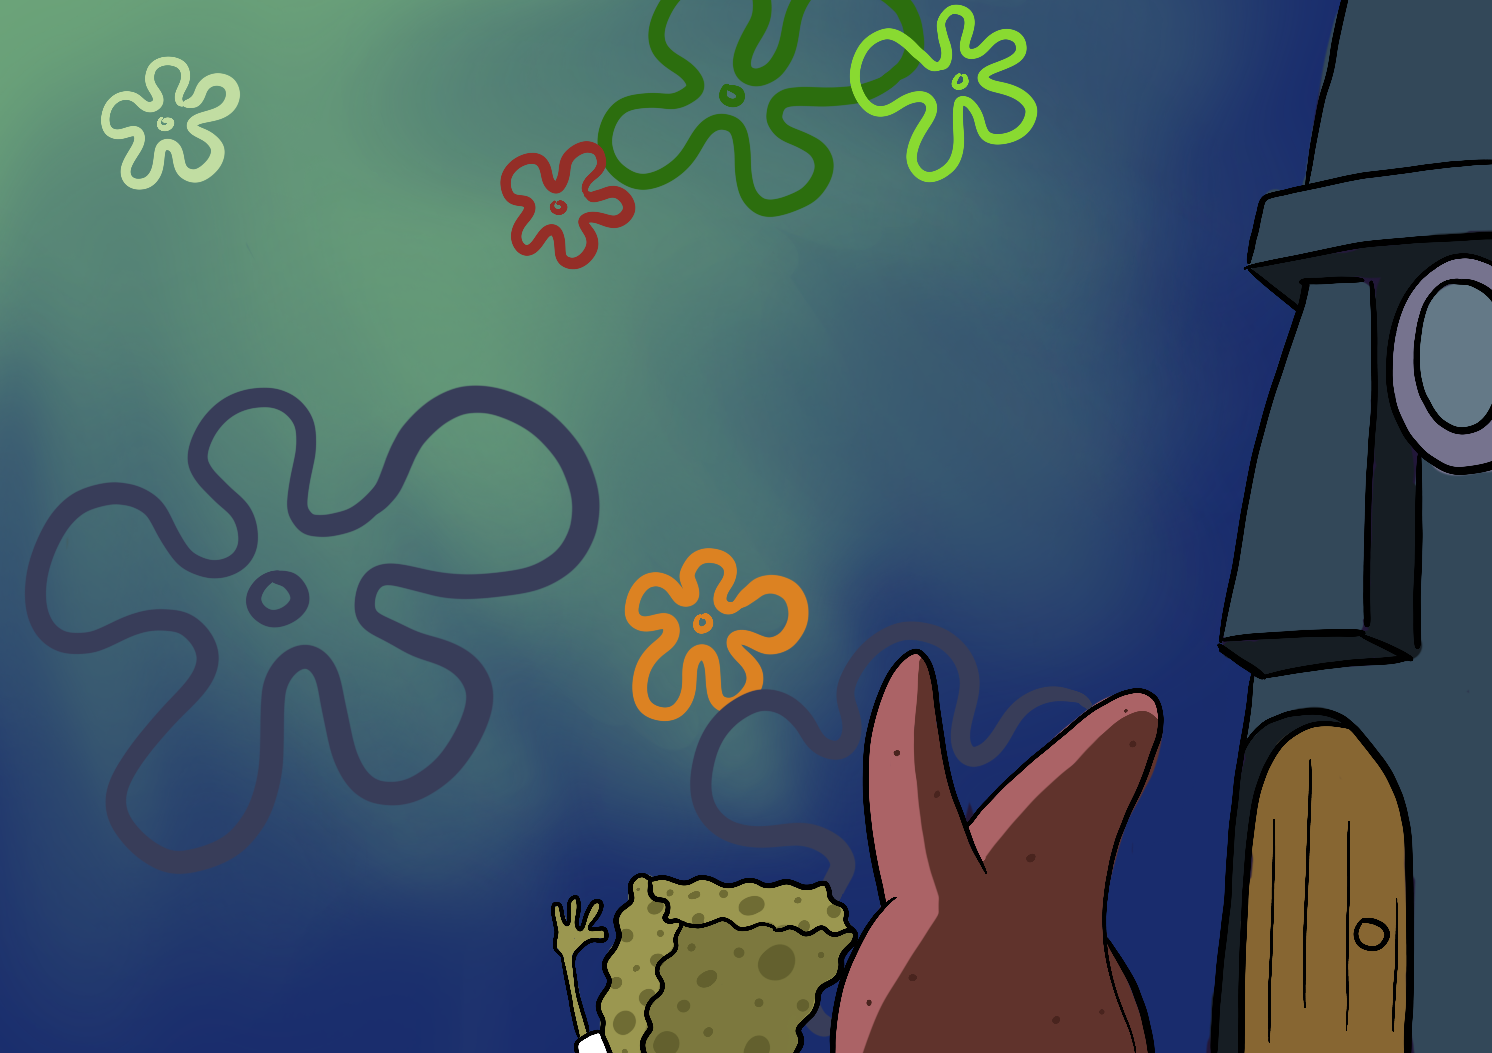 top spongebob episodes